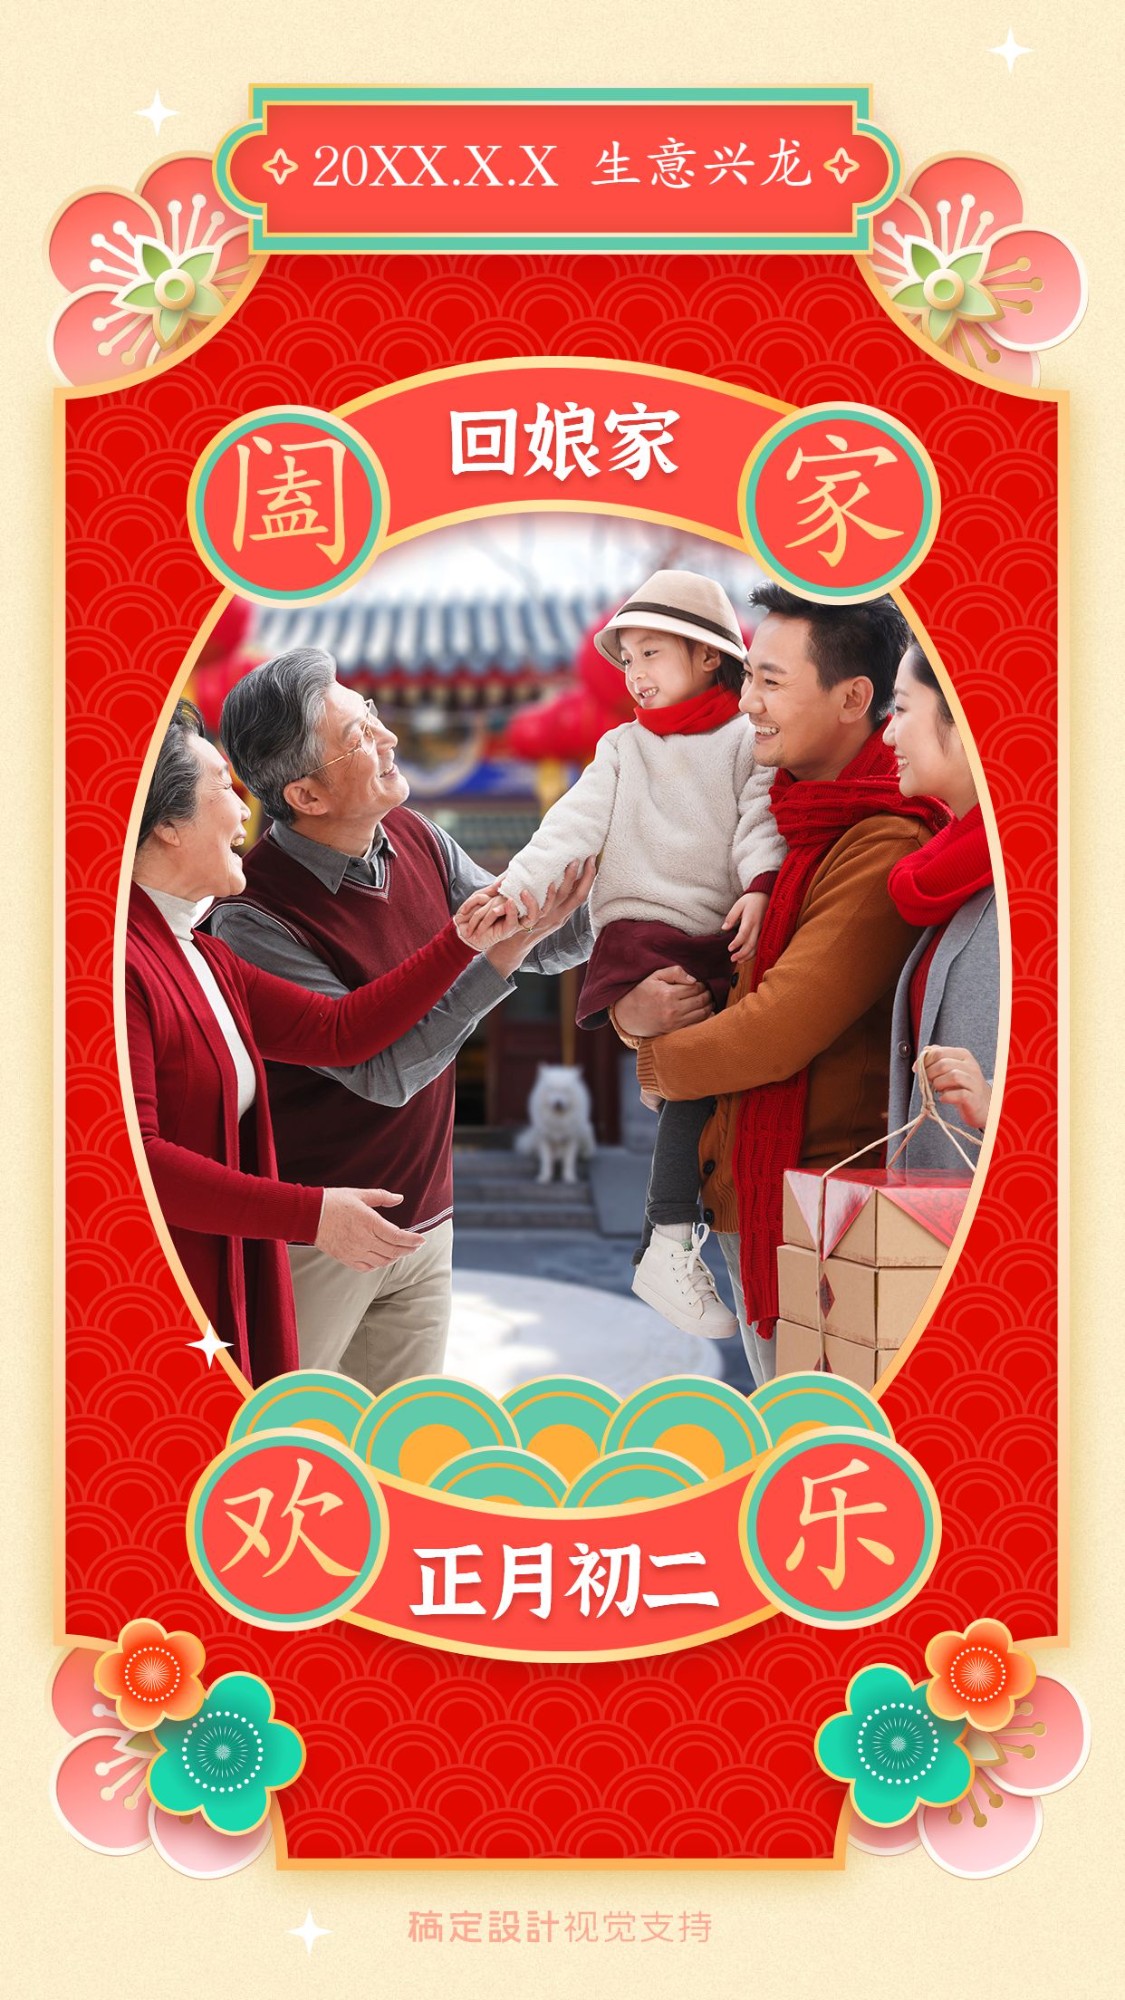 春节习俗正月初二回娘家拜年祝福预览效果